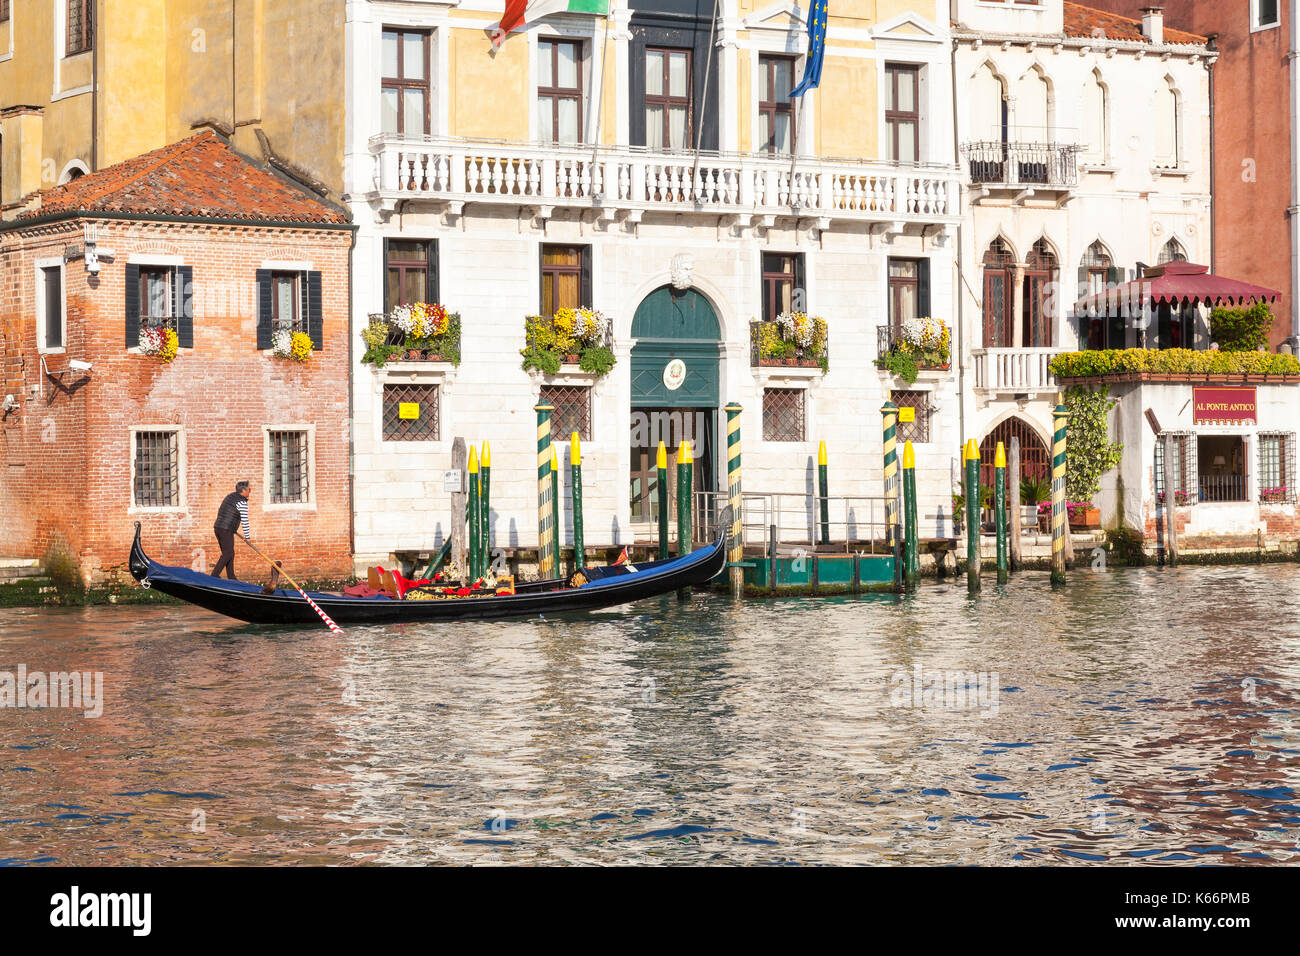 Gondoliere rudern seine leere Gondel bei Sonnenuntergang auf dem Canal Grande, Venedig, Italien Vergangenheit historische bunte Paläste in Cannaregio, beendet er seine Tage Stockfoto